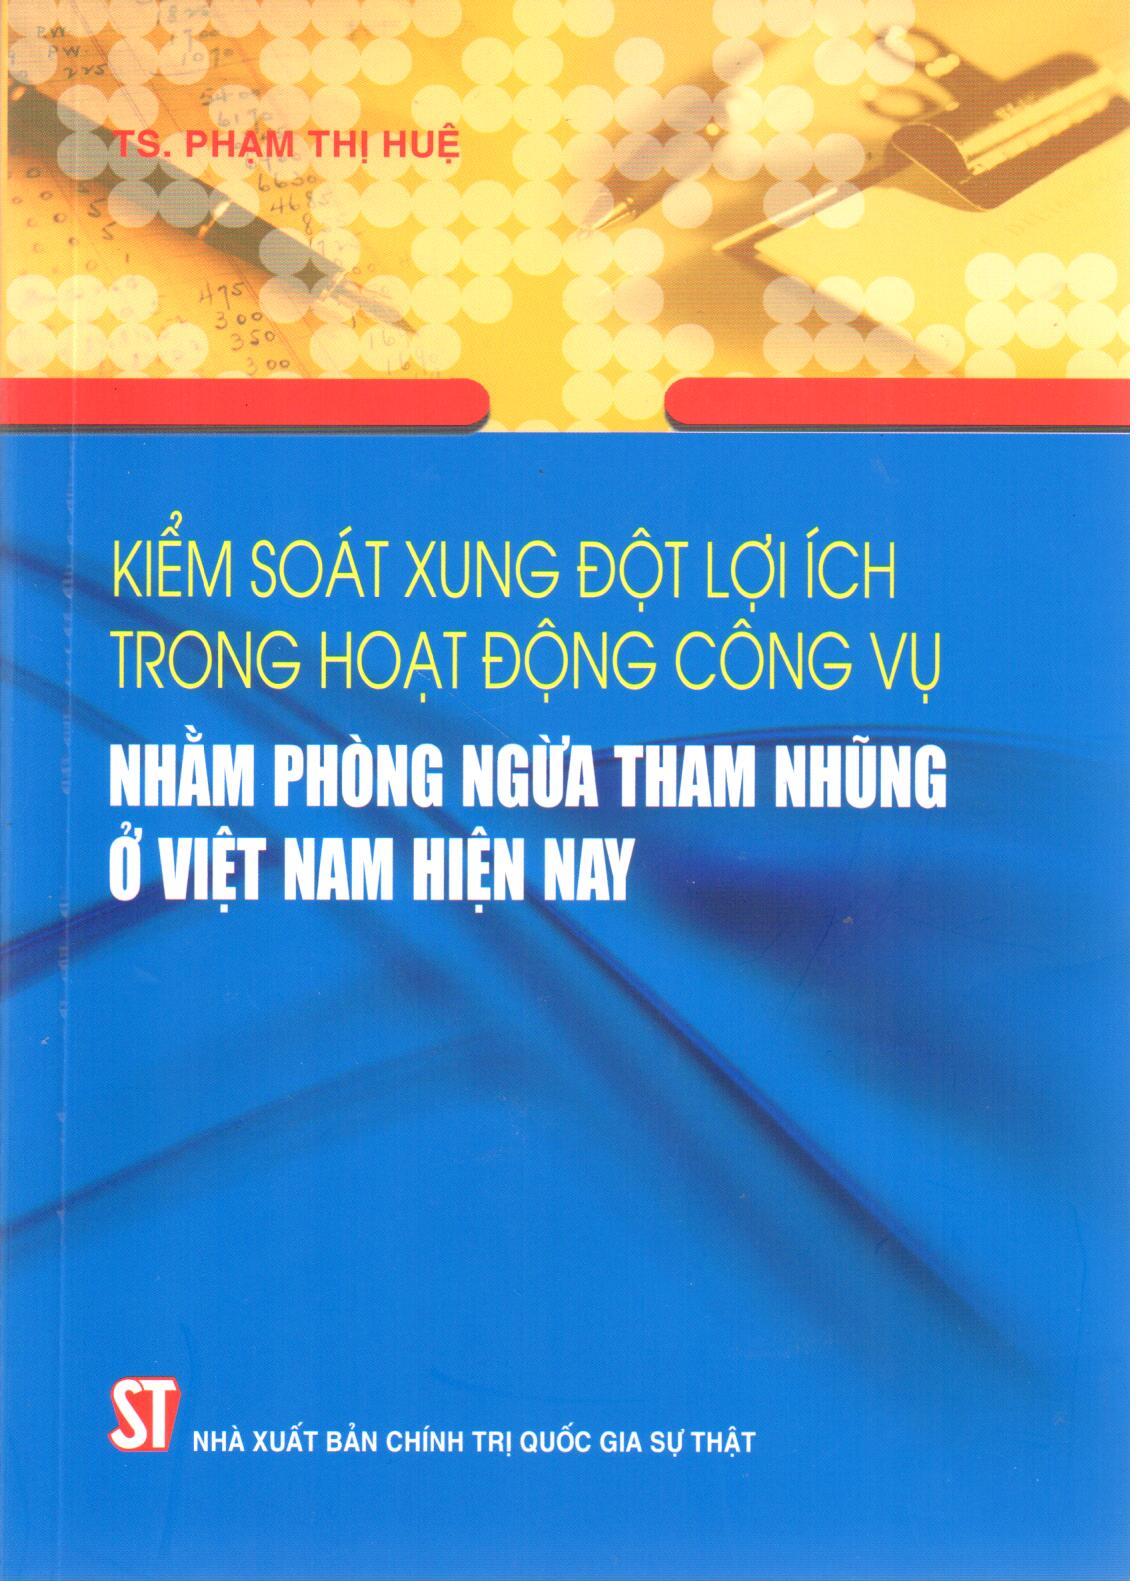 Kiểm soát xung đột lợi ích trong hoạt động công vụ nhằm phòng ngừa tham nhũng ở Việt Nam hiện nay